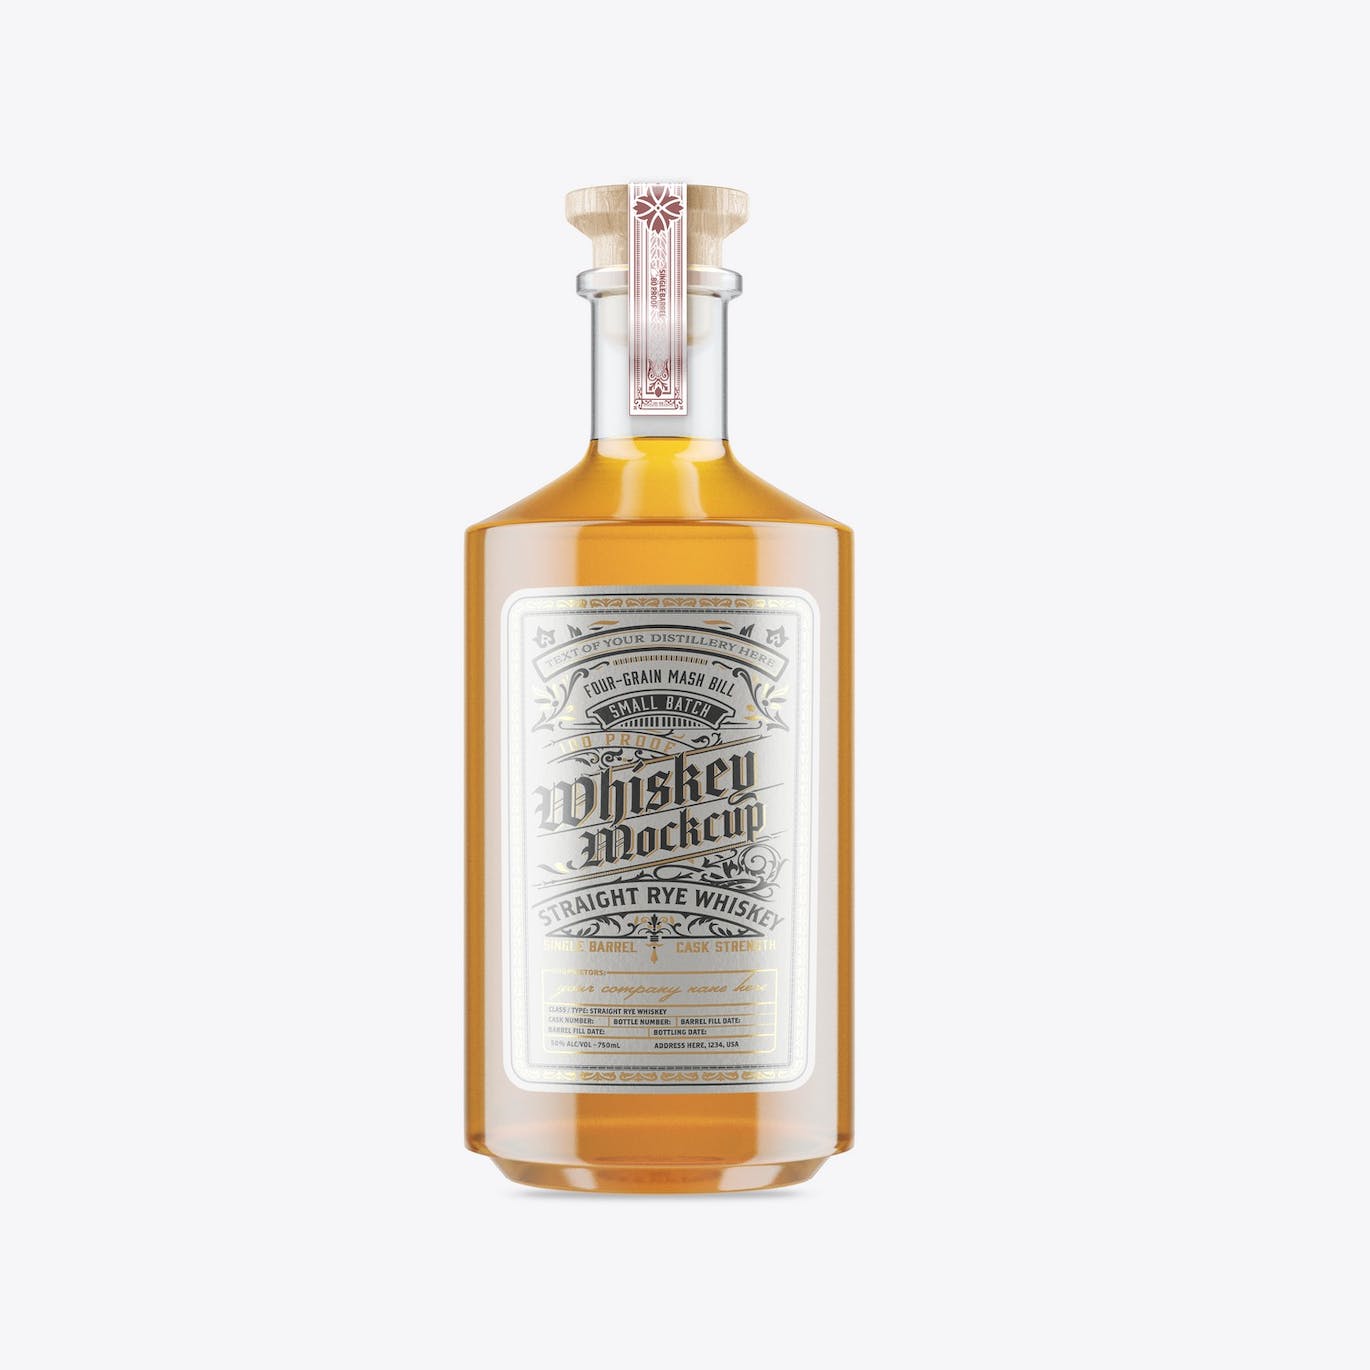 威士忌酒玻璃瓶包装设计样机 Pack Whiskey Liquor Glass Bottle Mockup 样机素材 第2张